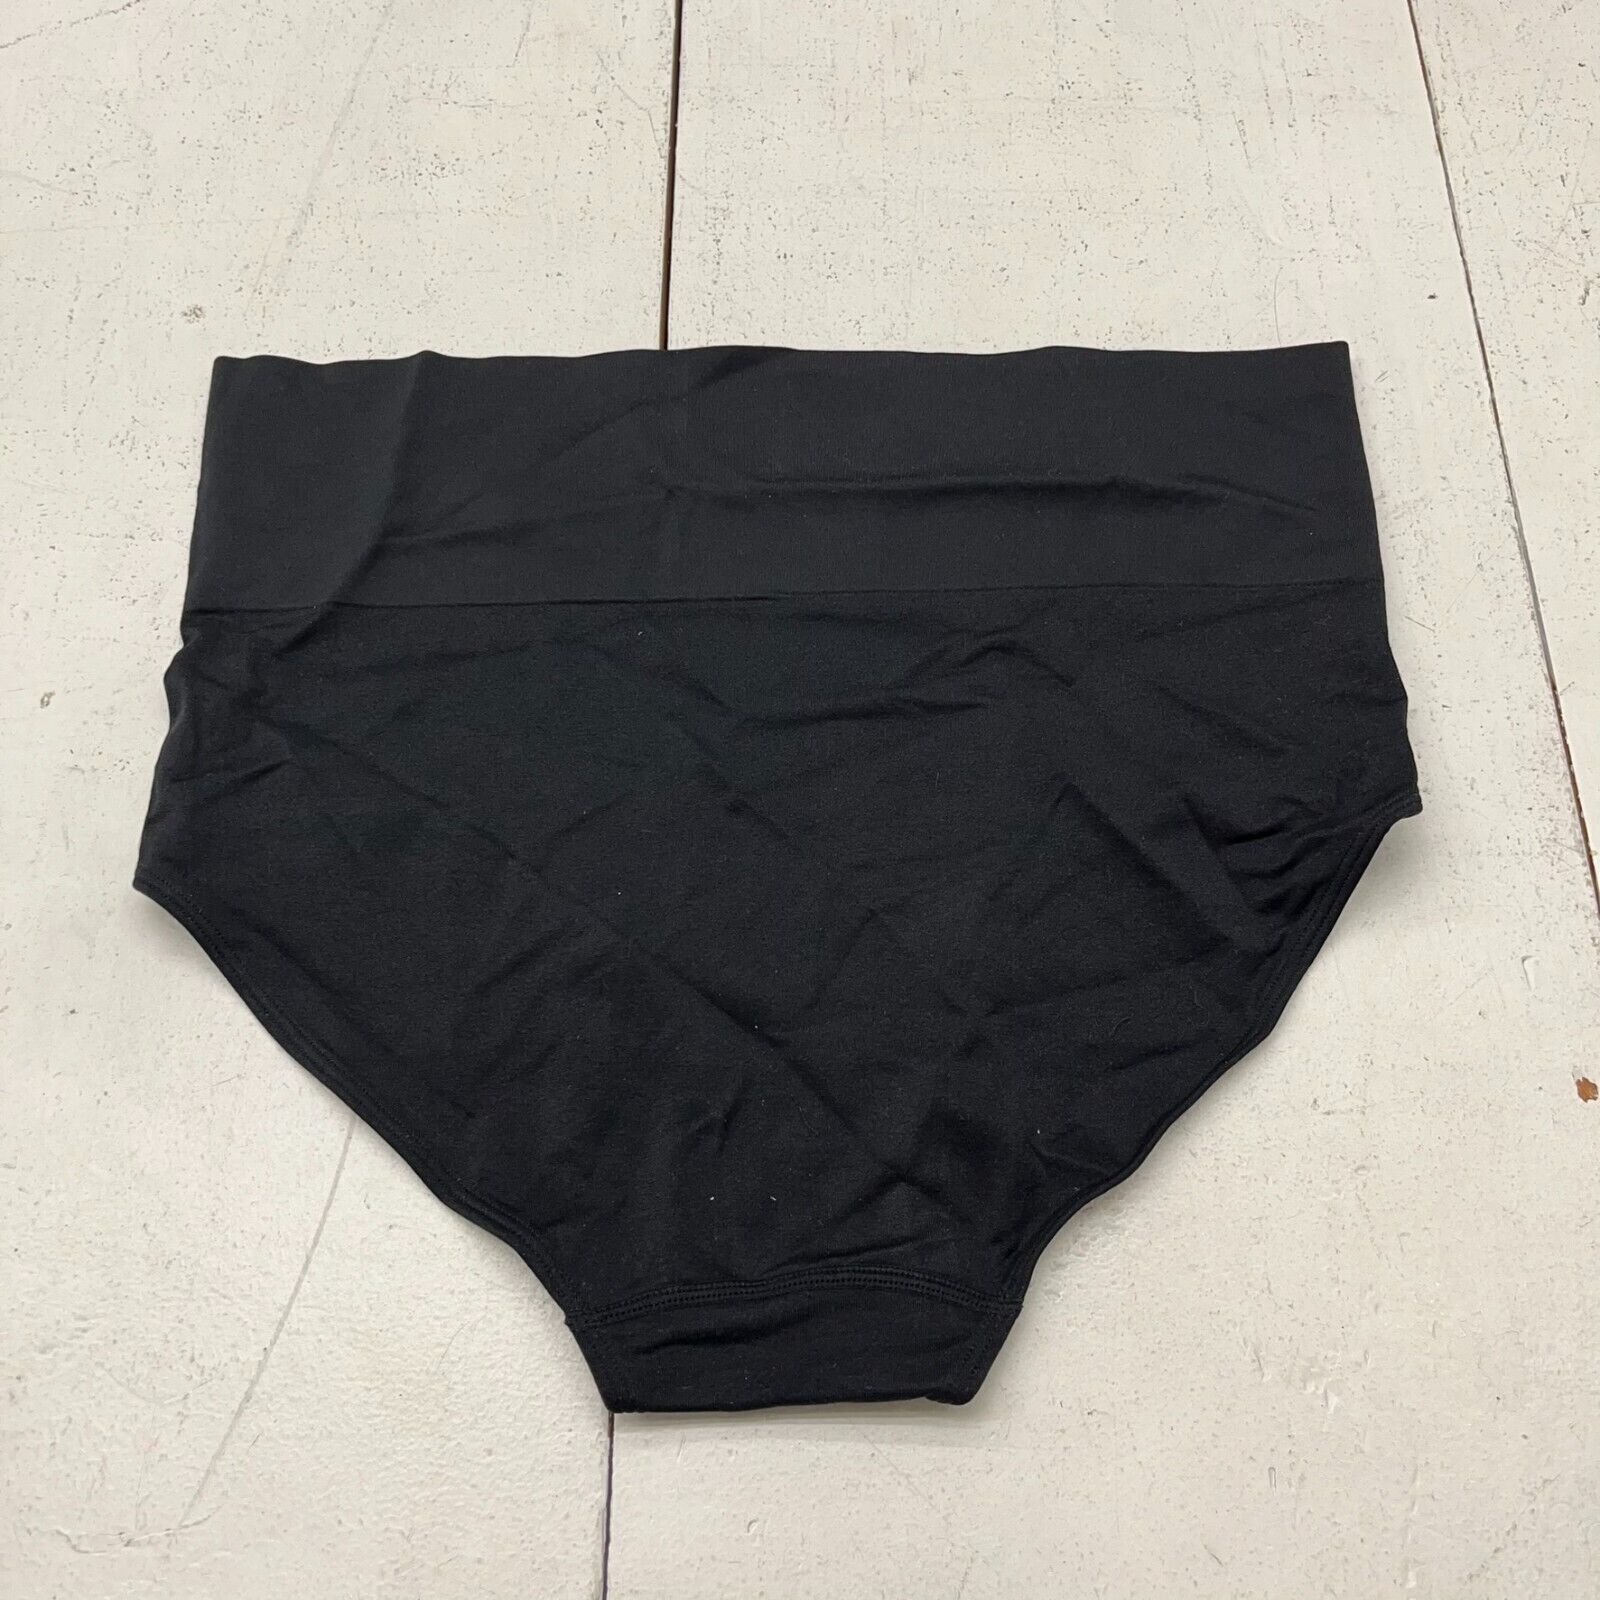 Auden Black Seamless Brief Underwear Women's Size 1X NEW - beyond exchange